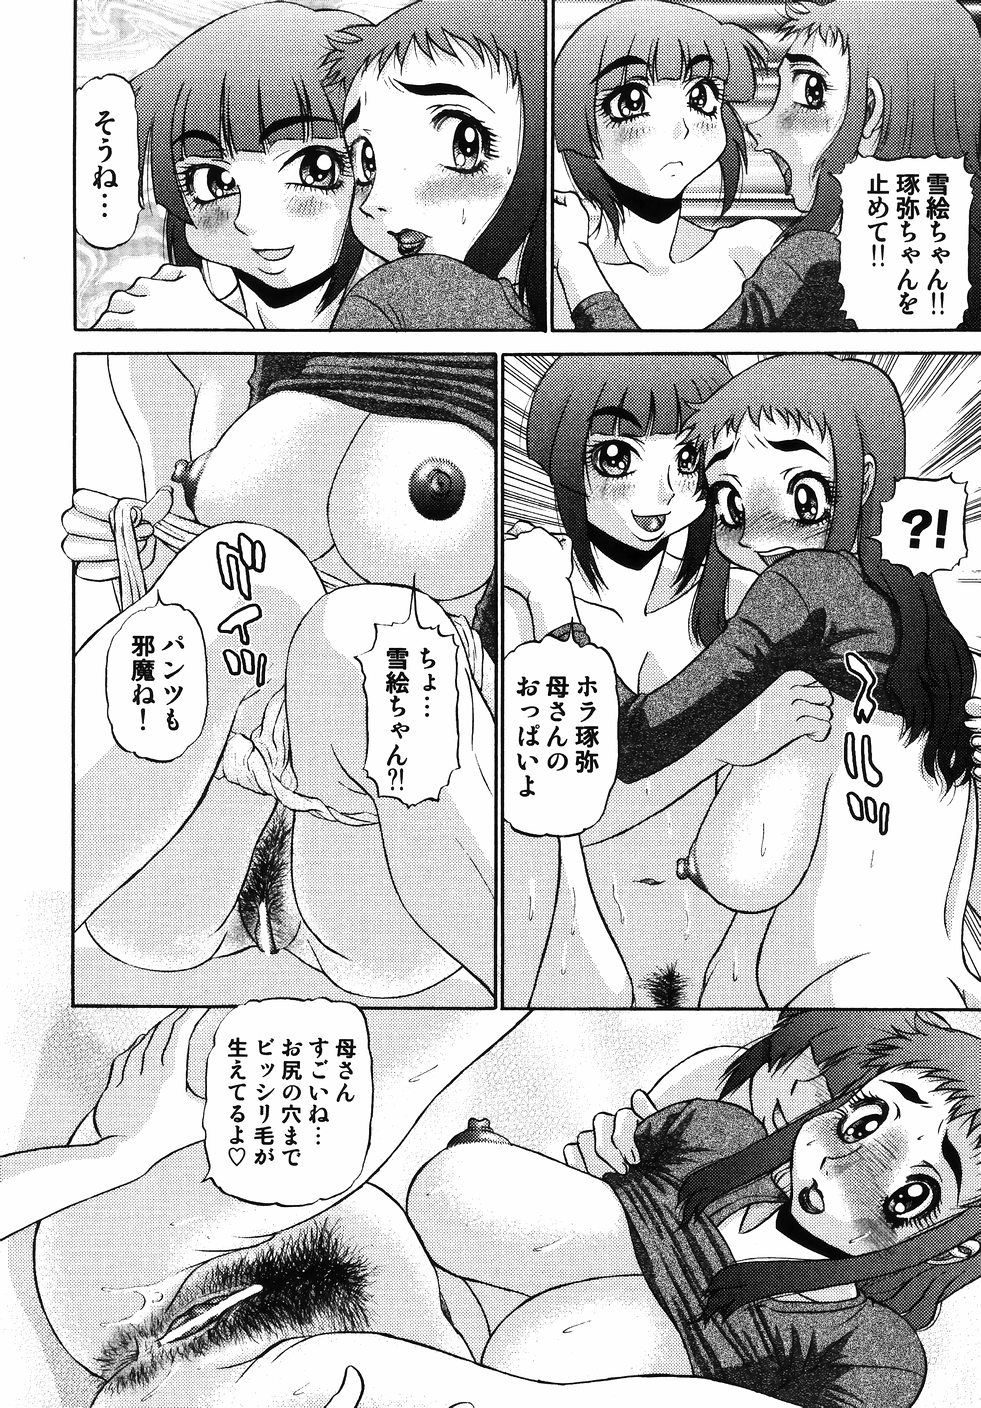 [PJ-1] Nozomi 2 page 32 full